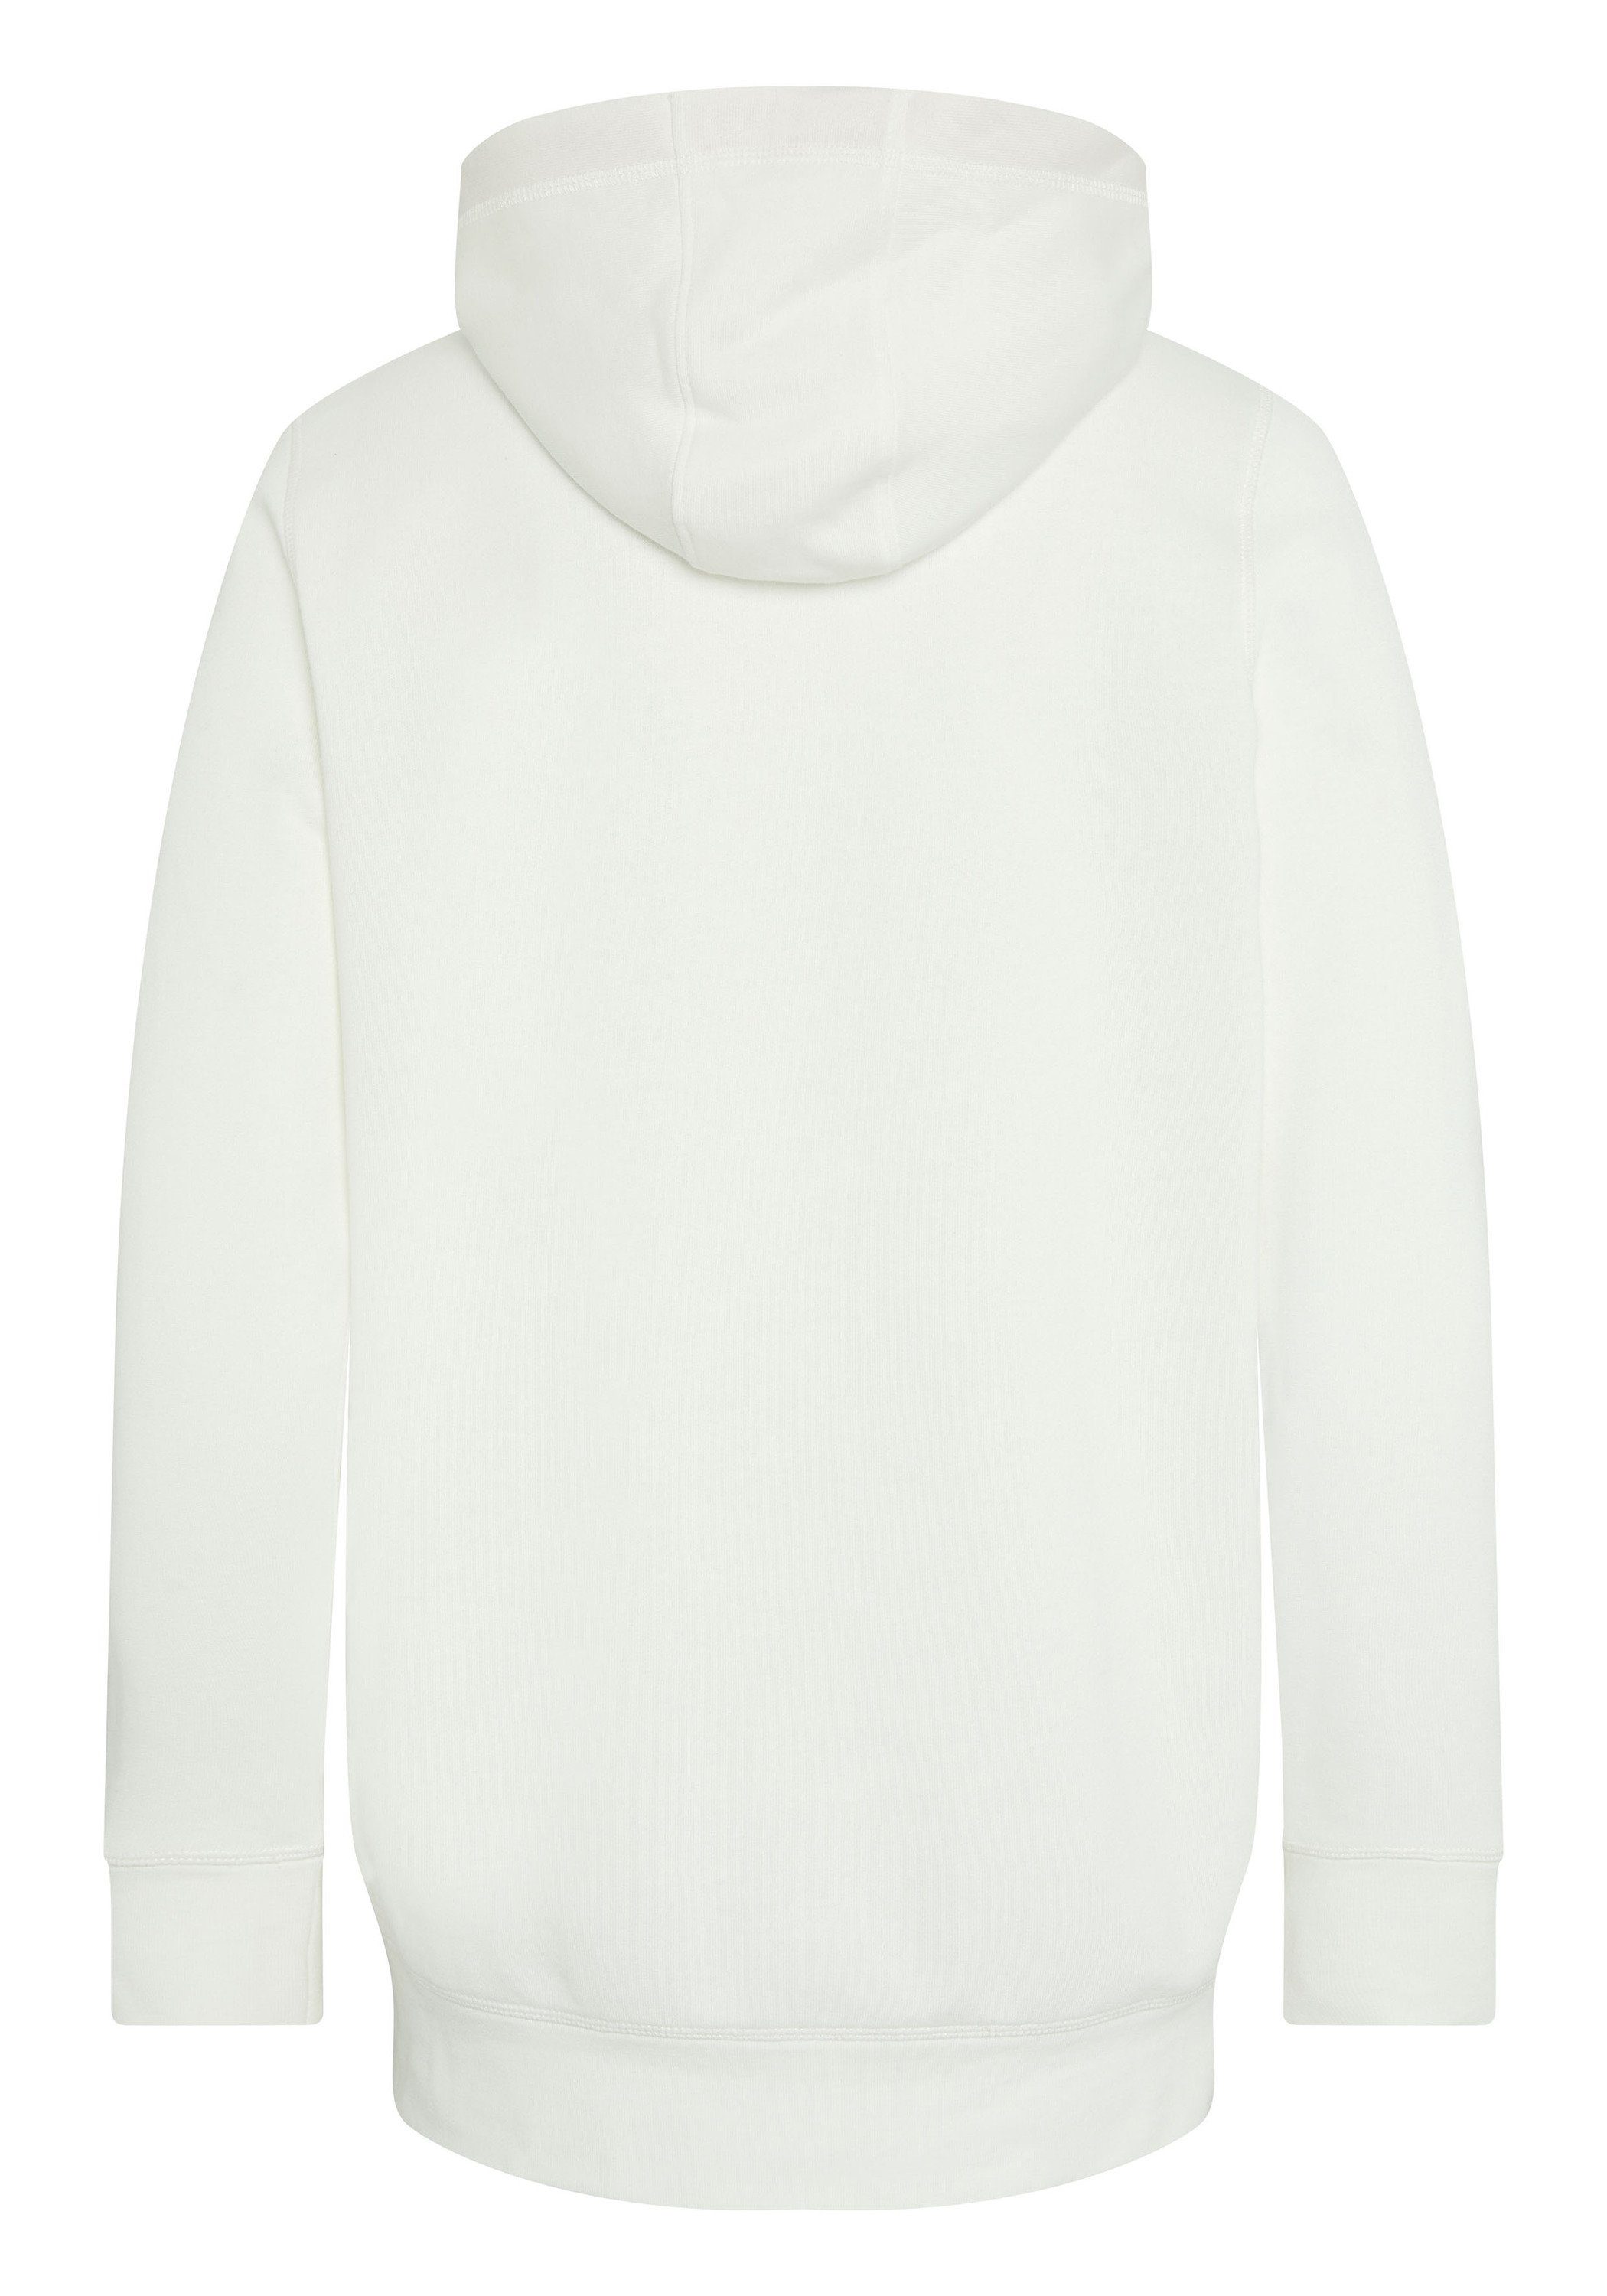 Desert-Motiv Oklahoma Jeans White Snow Kapuzensweatshirt mit 11-0602